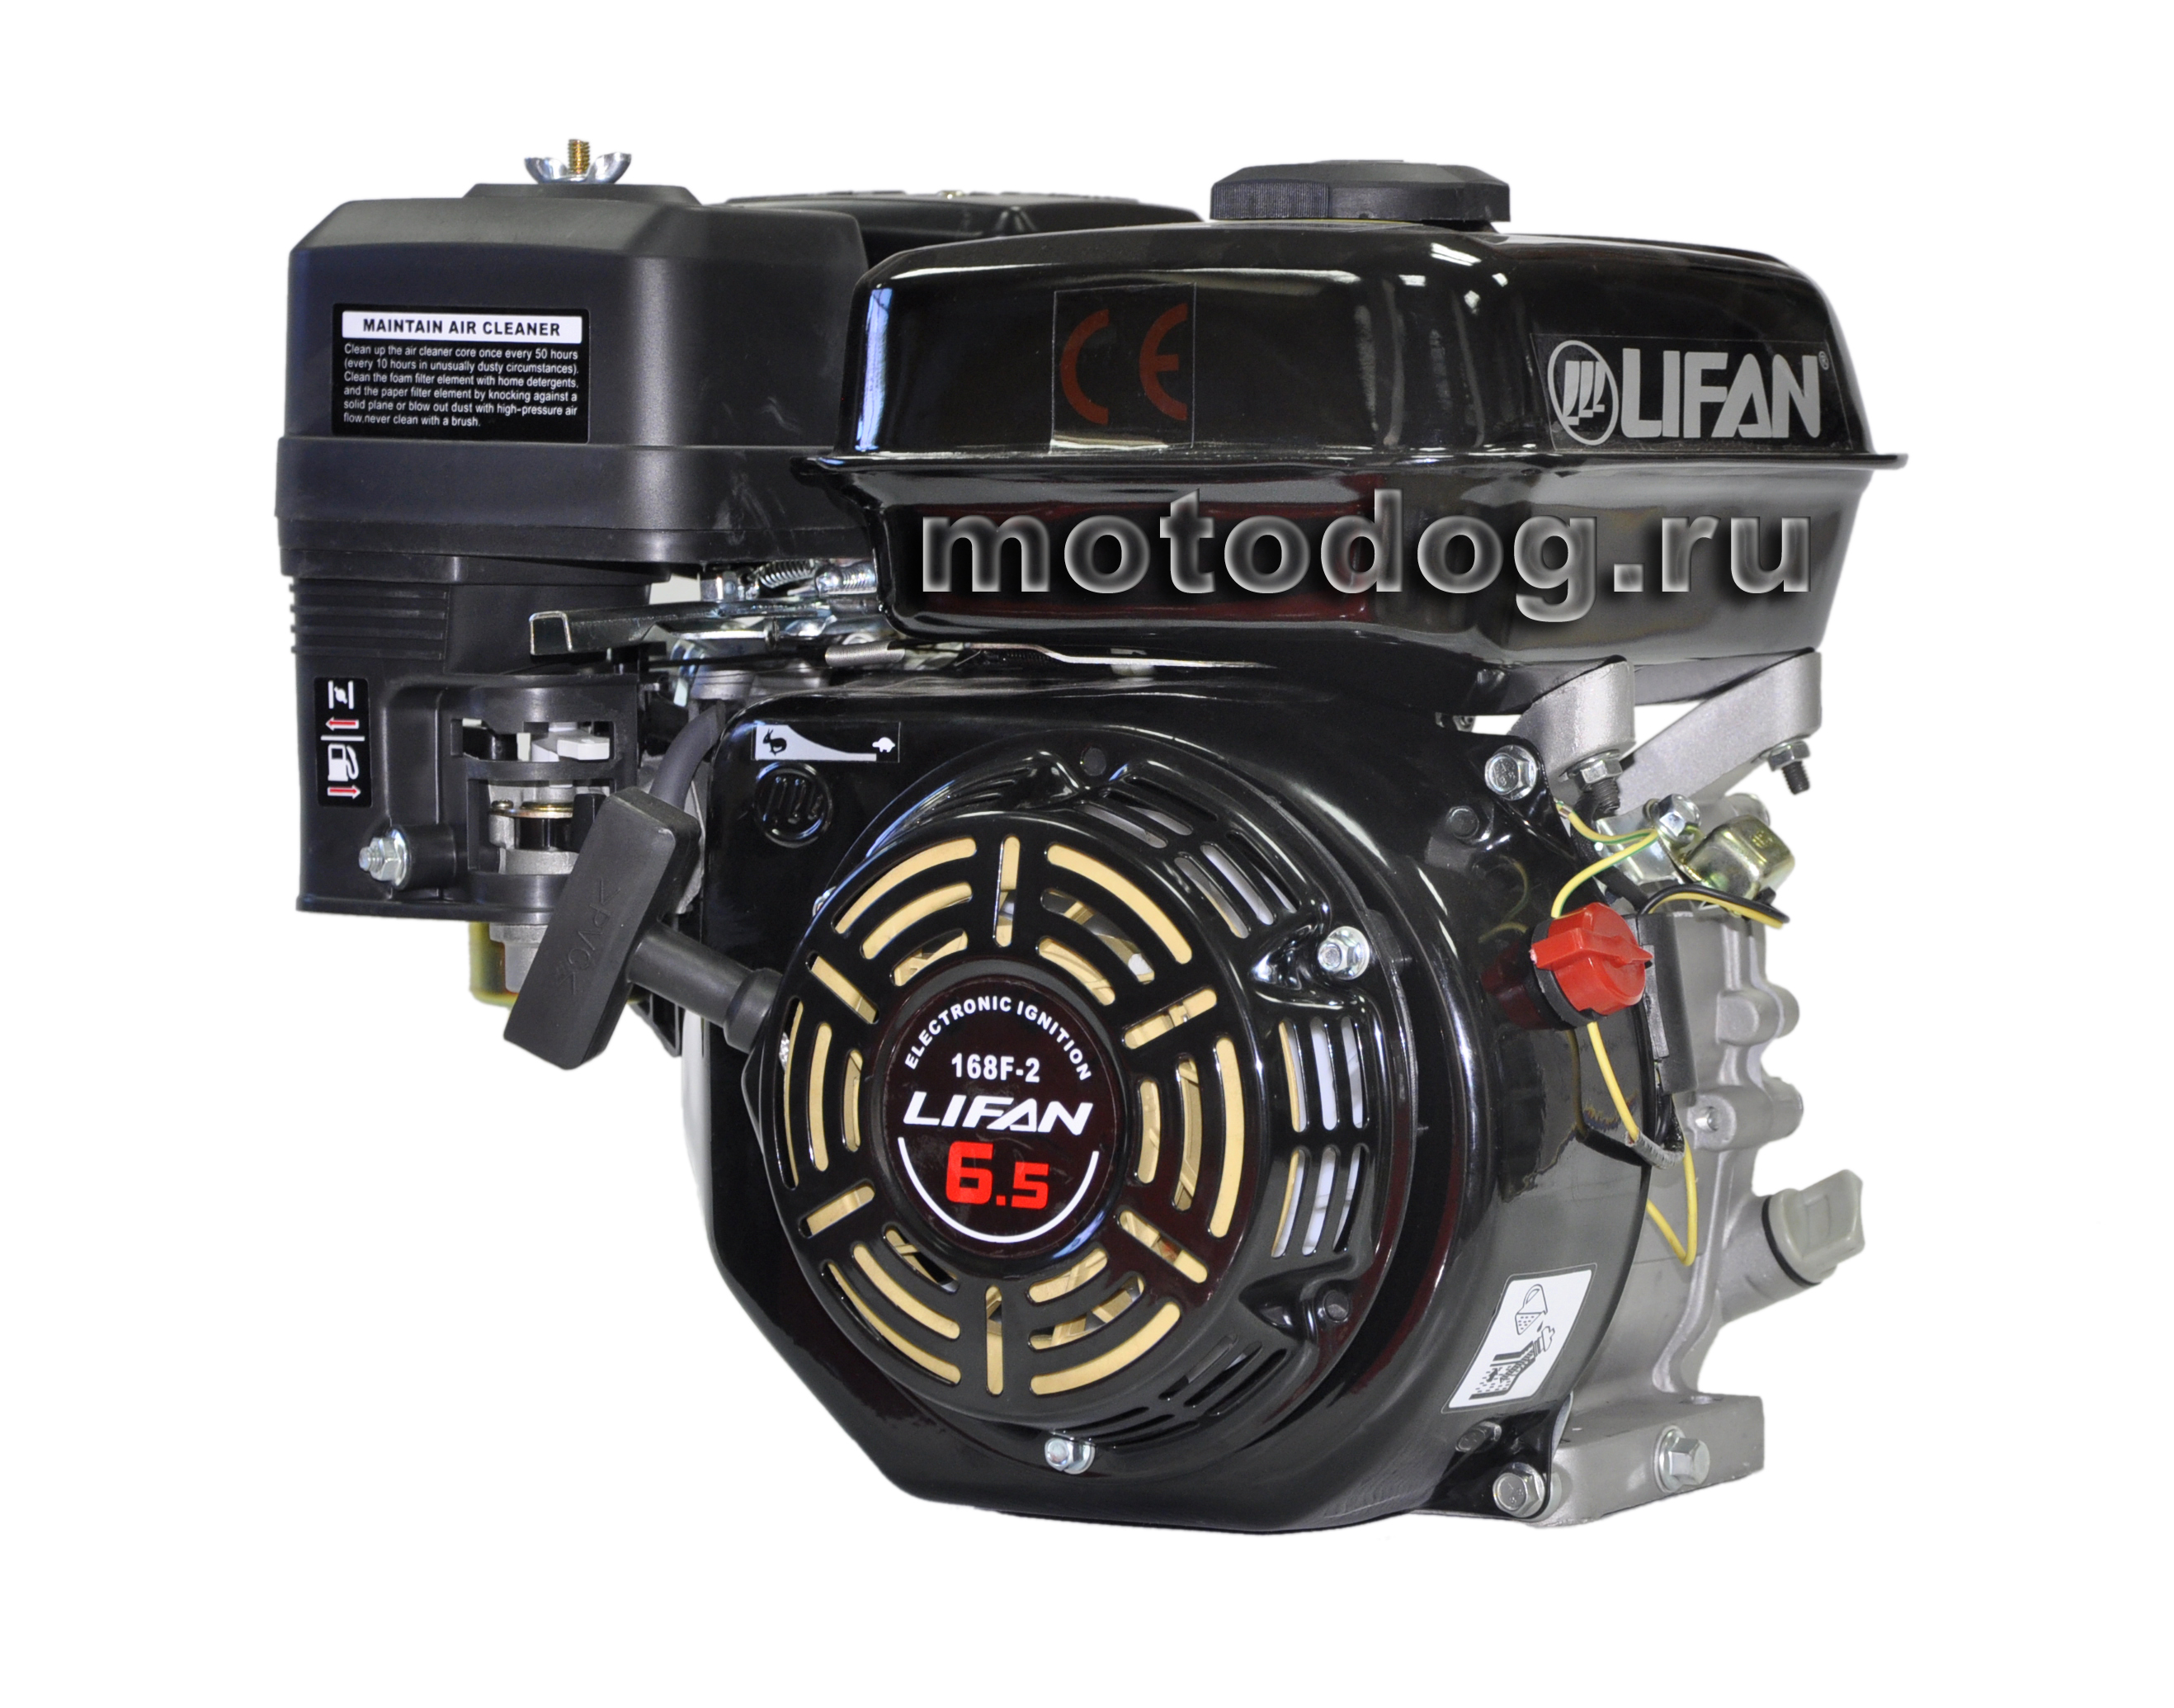 Купить двигатель лифан 6.5 л с. Двигатель Lifan 6,5 л.с. 168f-2. Двигатель Лифан 168 f-2 6.5л.с. Двигатель бензиновый Lifan 168f-2r (6,5 л.с.). Lifan 168f-2.